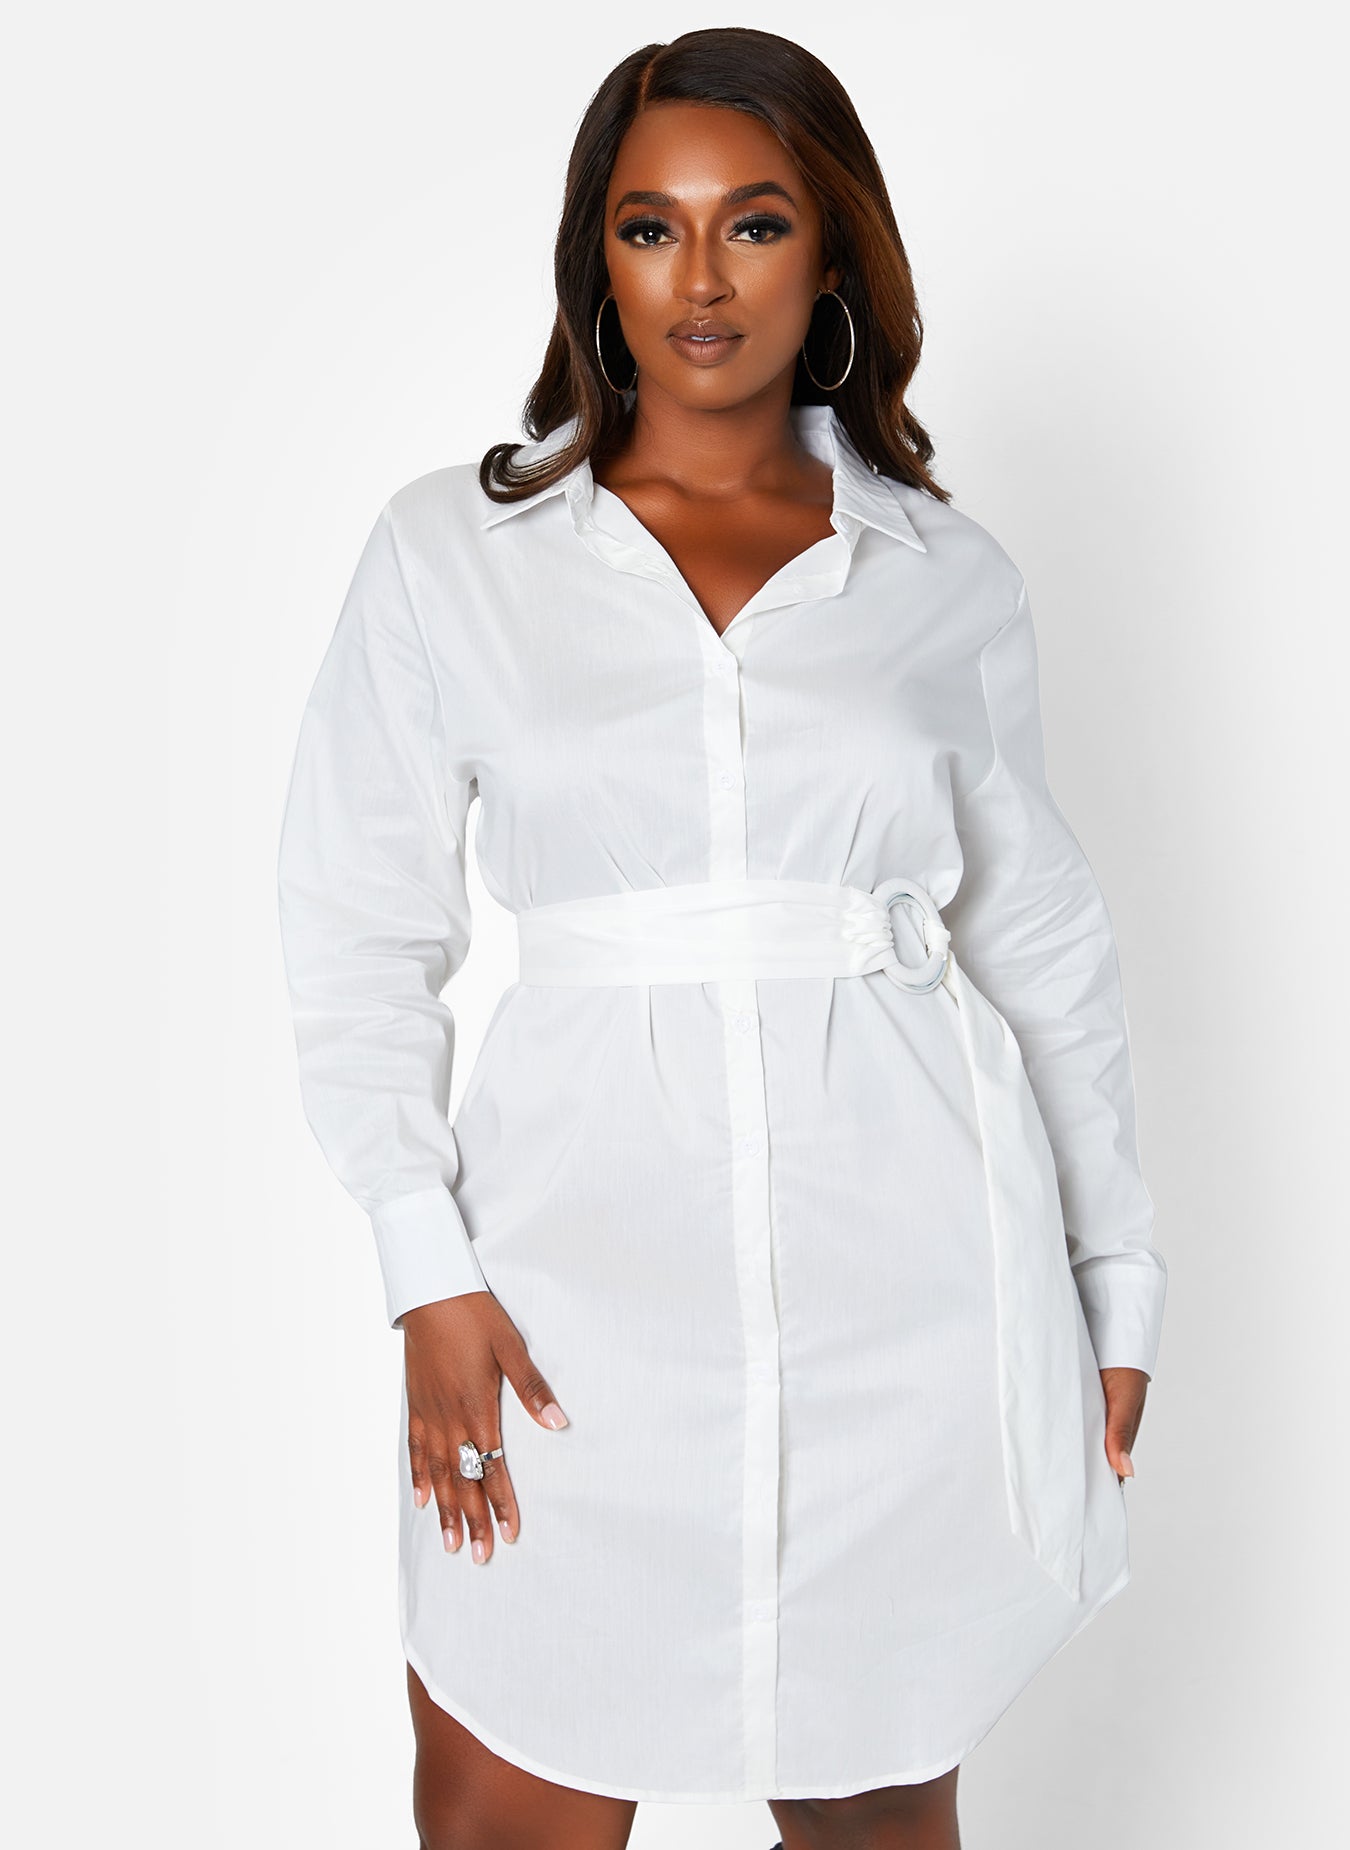 White Rebdolls "Good Time" Collared Button Down Mini Dress Plus Sizes